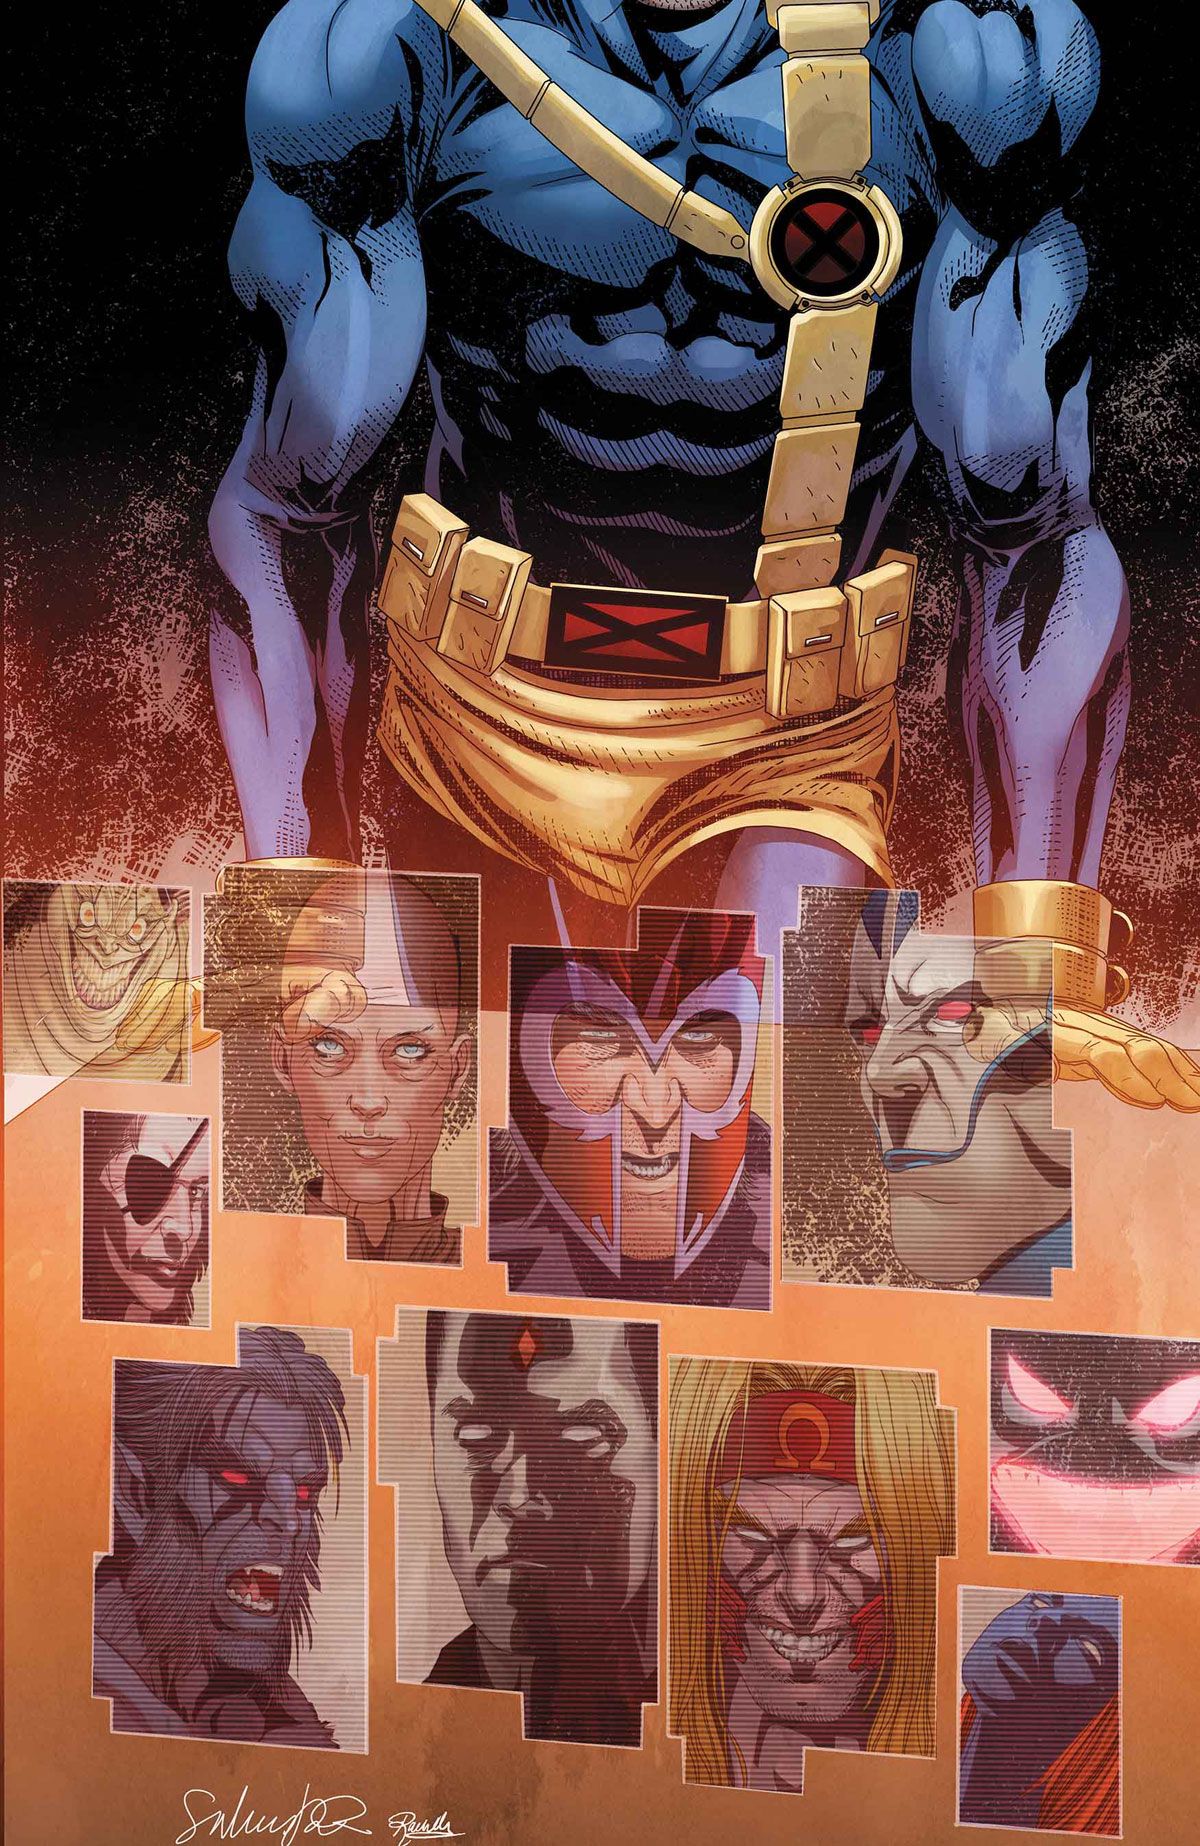 Uncanny X-Men 13 cover